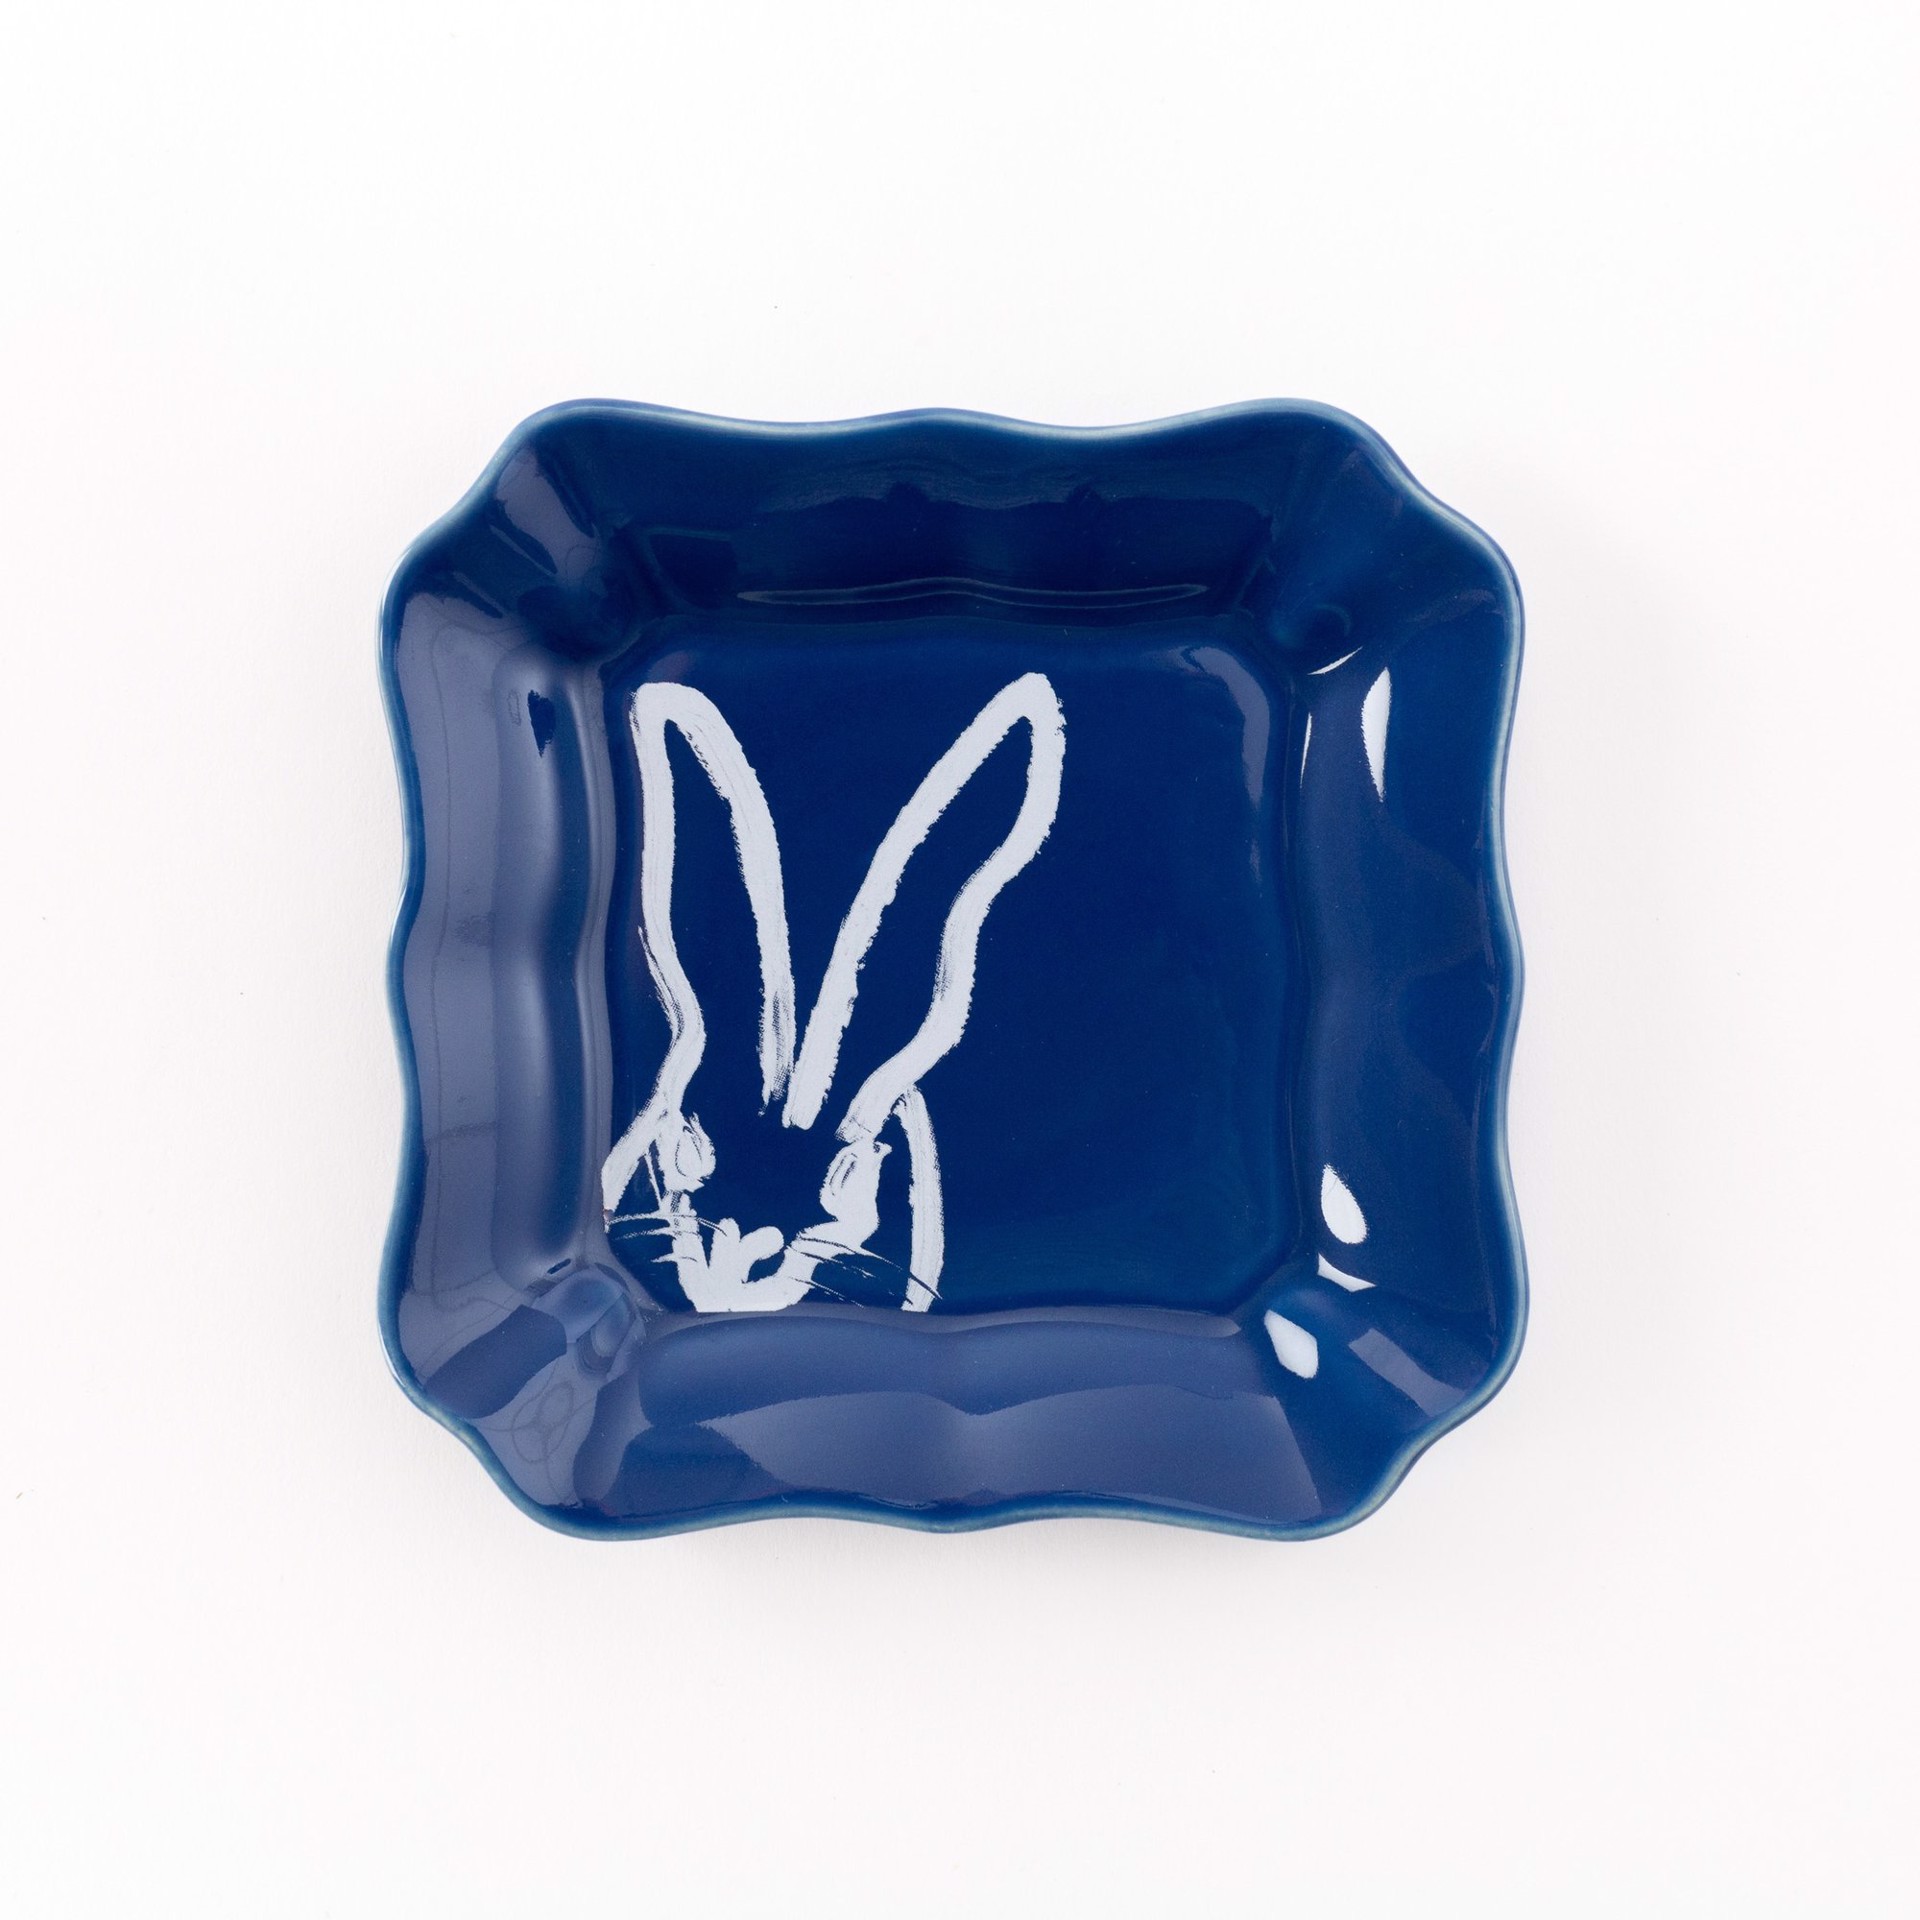 BLUE PORTRAIT PLATE by Hunt Slonem (Hop Up Shop)